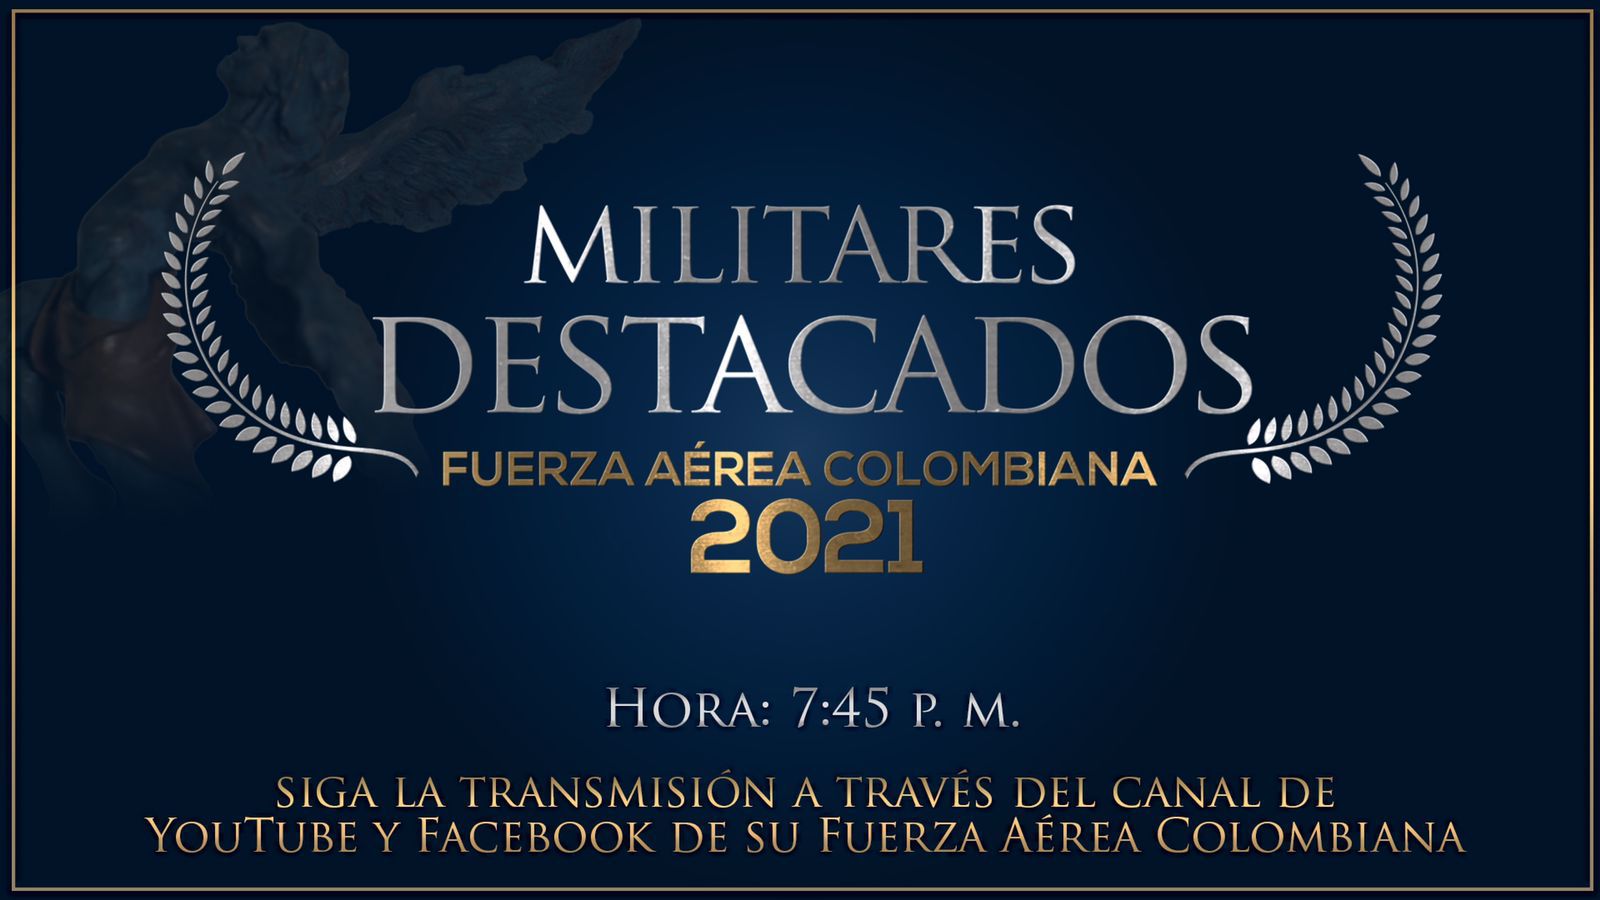 Hoy, homenaje a los militares destacados de su Fuerza Aérea Colombiana 2021